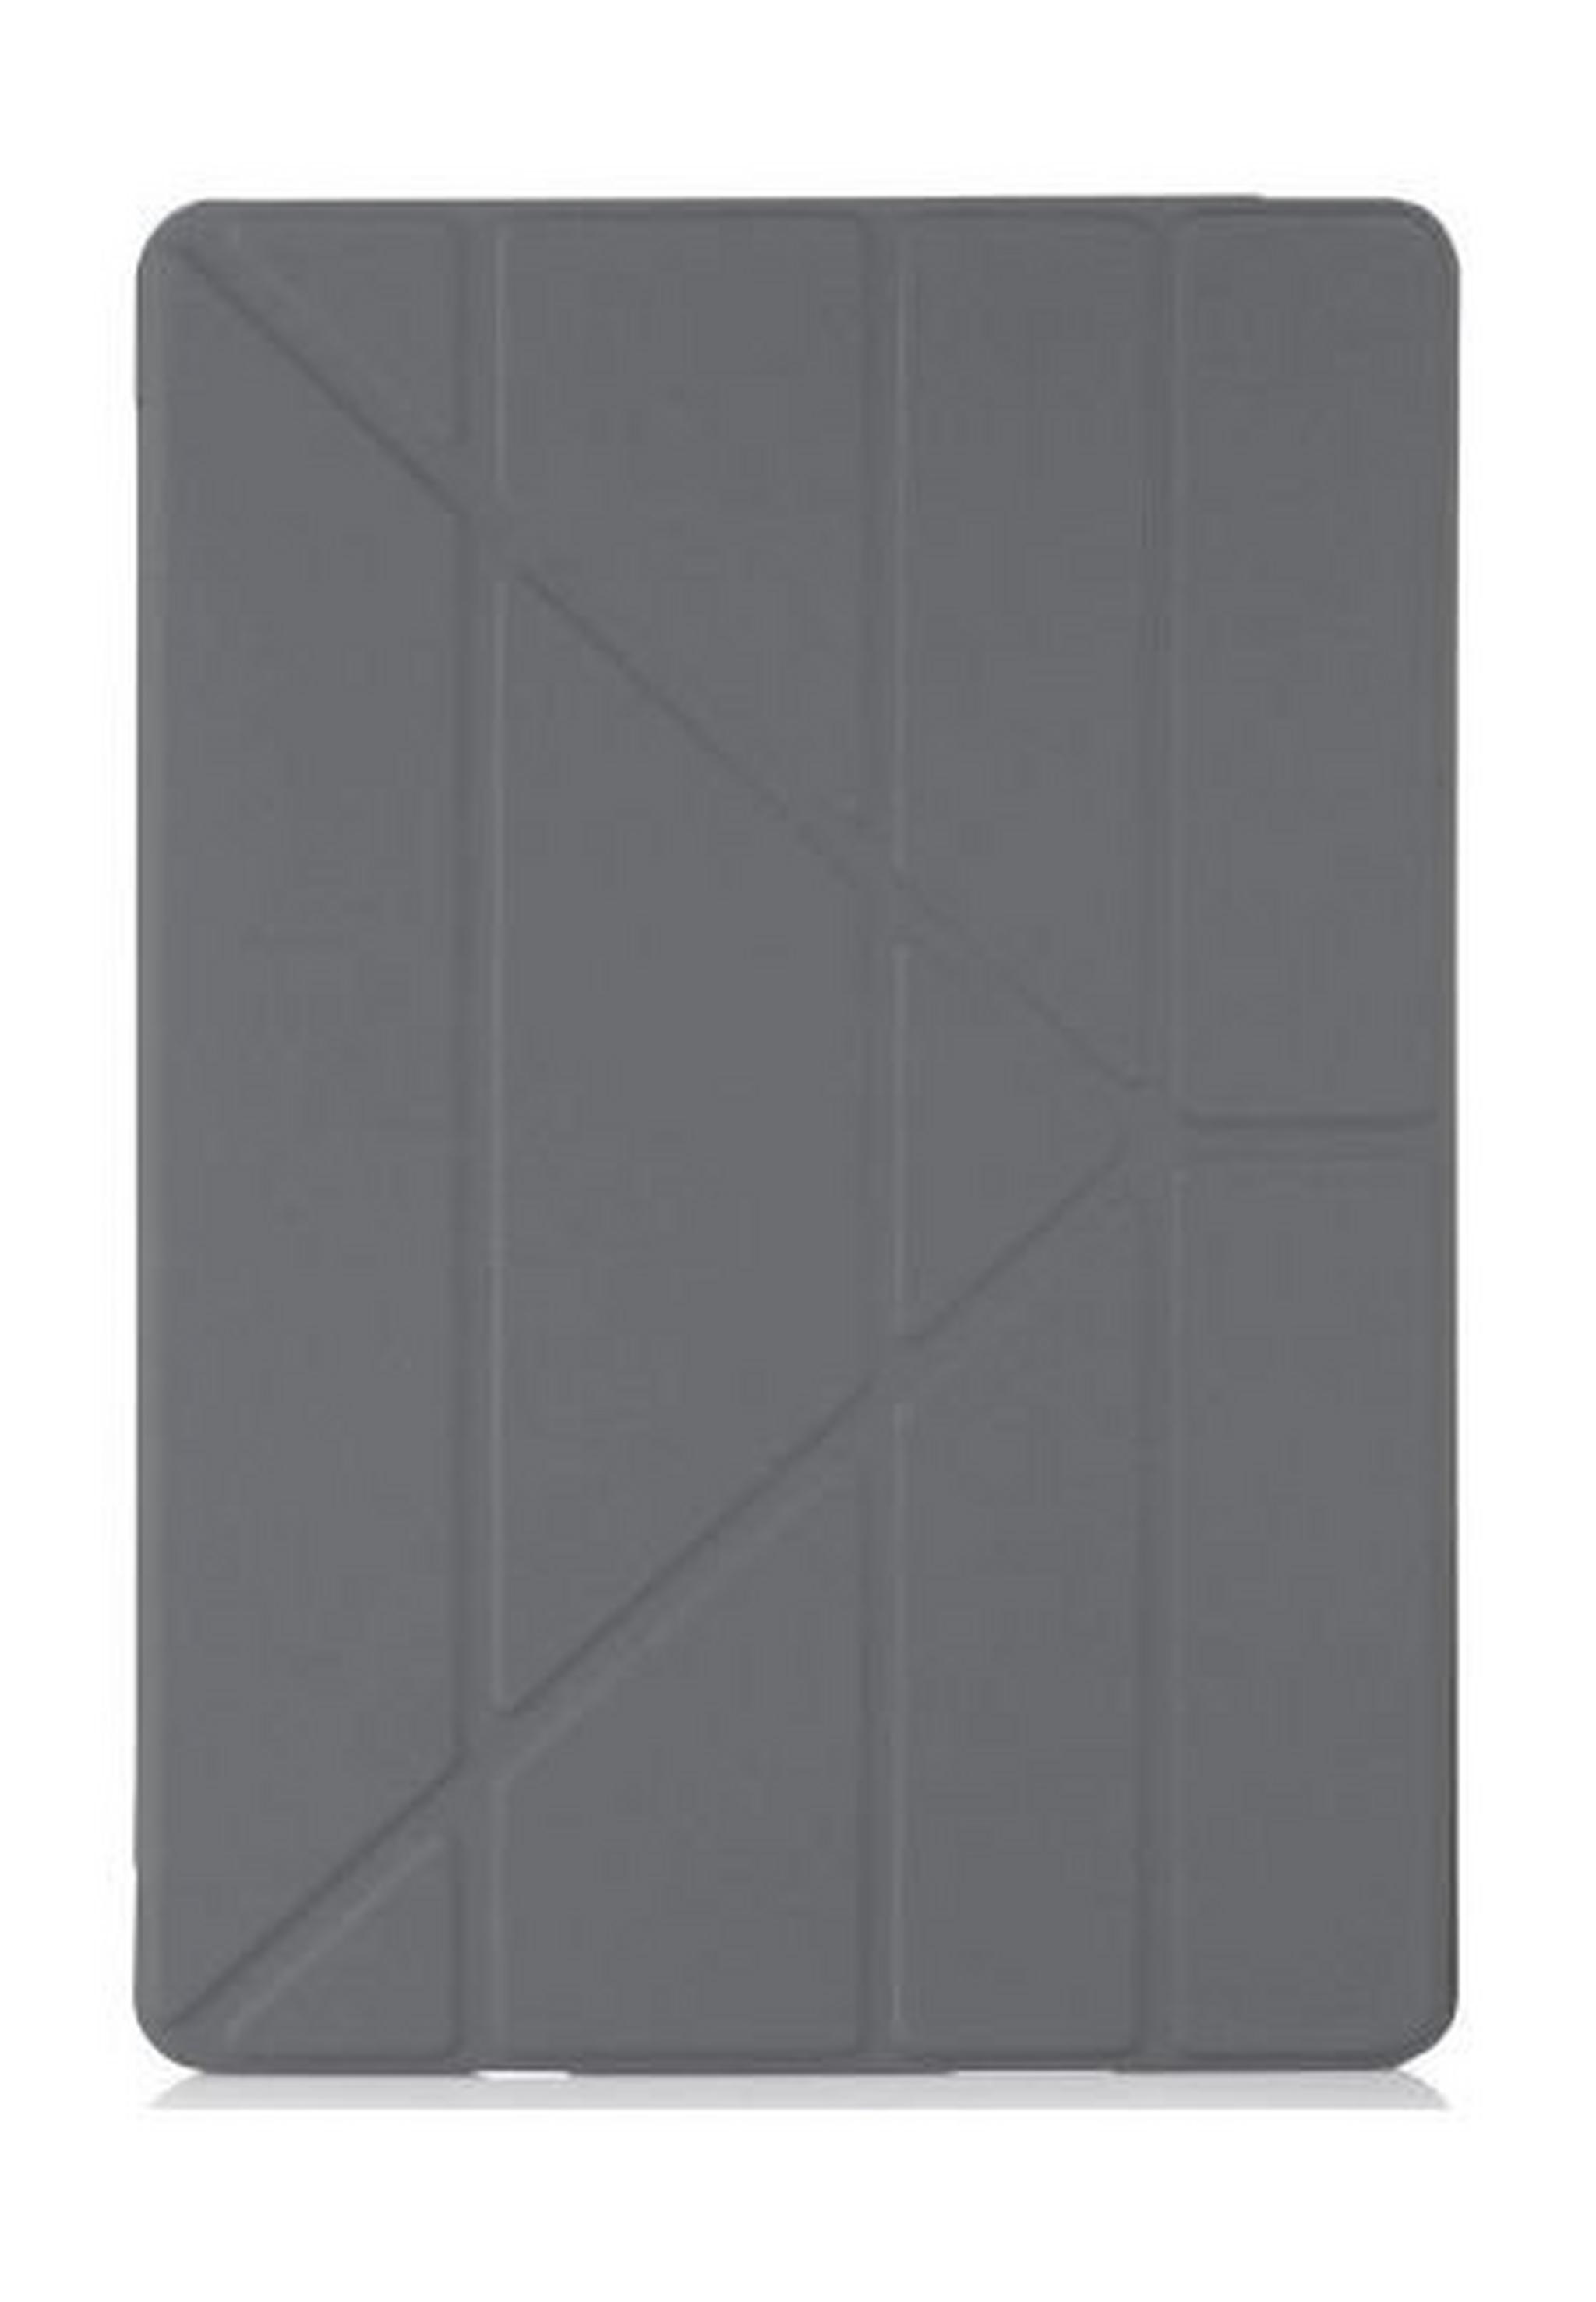 غطاء بيبيتو ٢٠١٧ أوريجامي قابل للطي لايباد ١٠,٥ بوصة - رمادي غامق (P043-50-4)